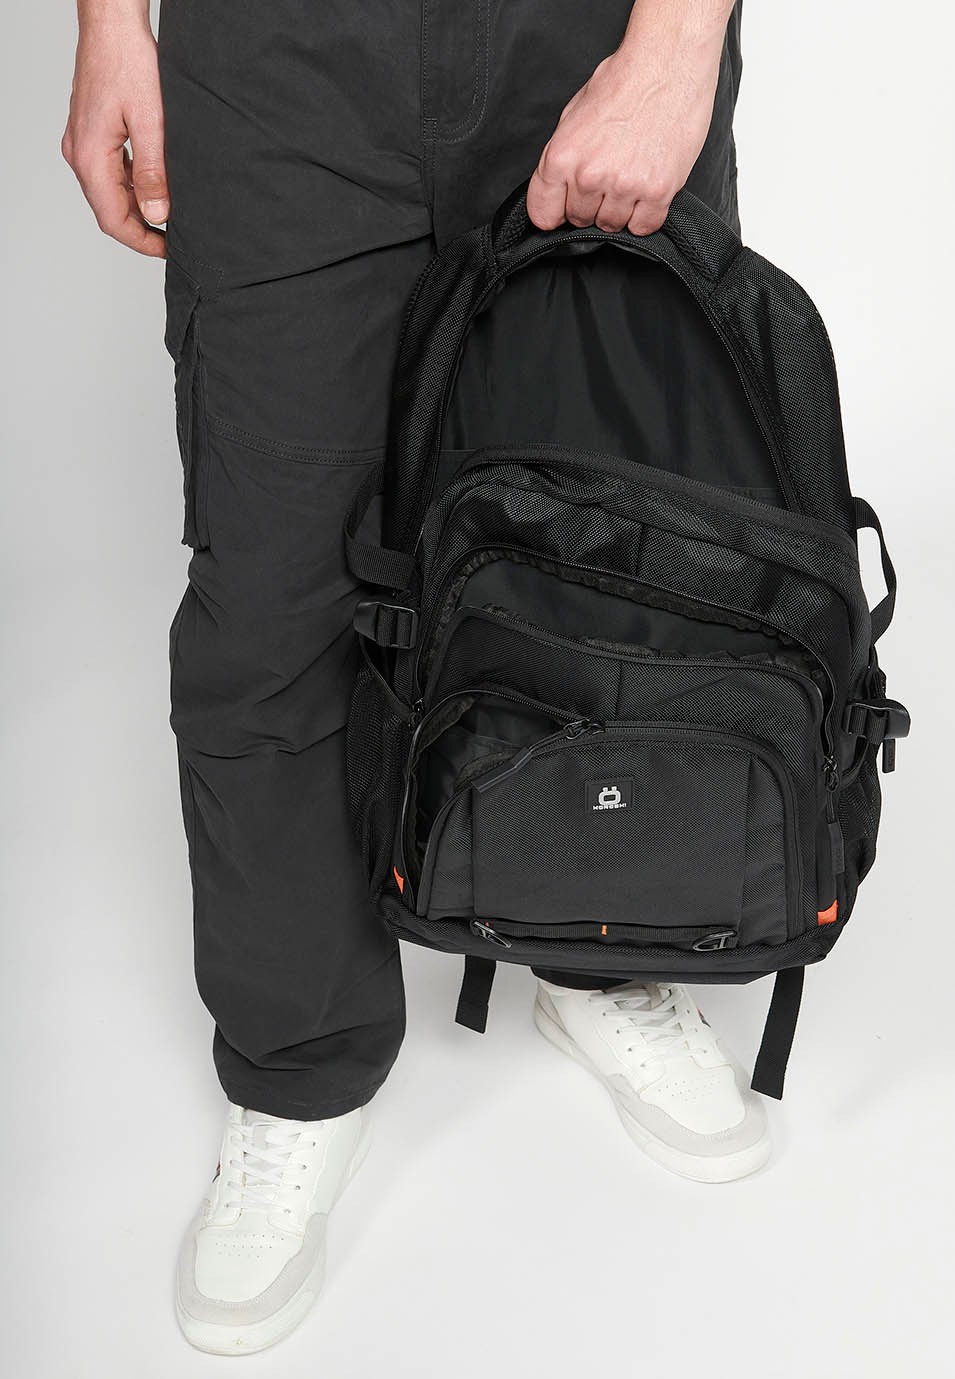 Koröshi-Rucksack mit drei Reißverschlussfächern, eines für einen Laptop, und schwarzen Innentaschen 9